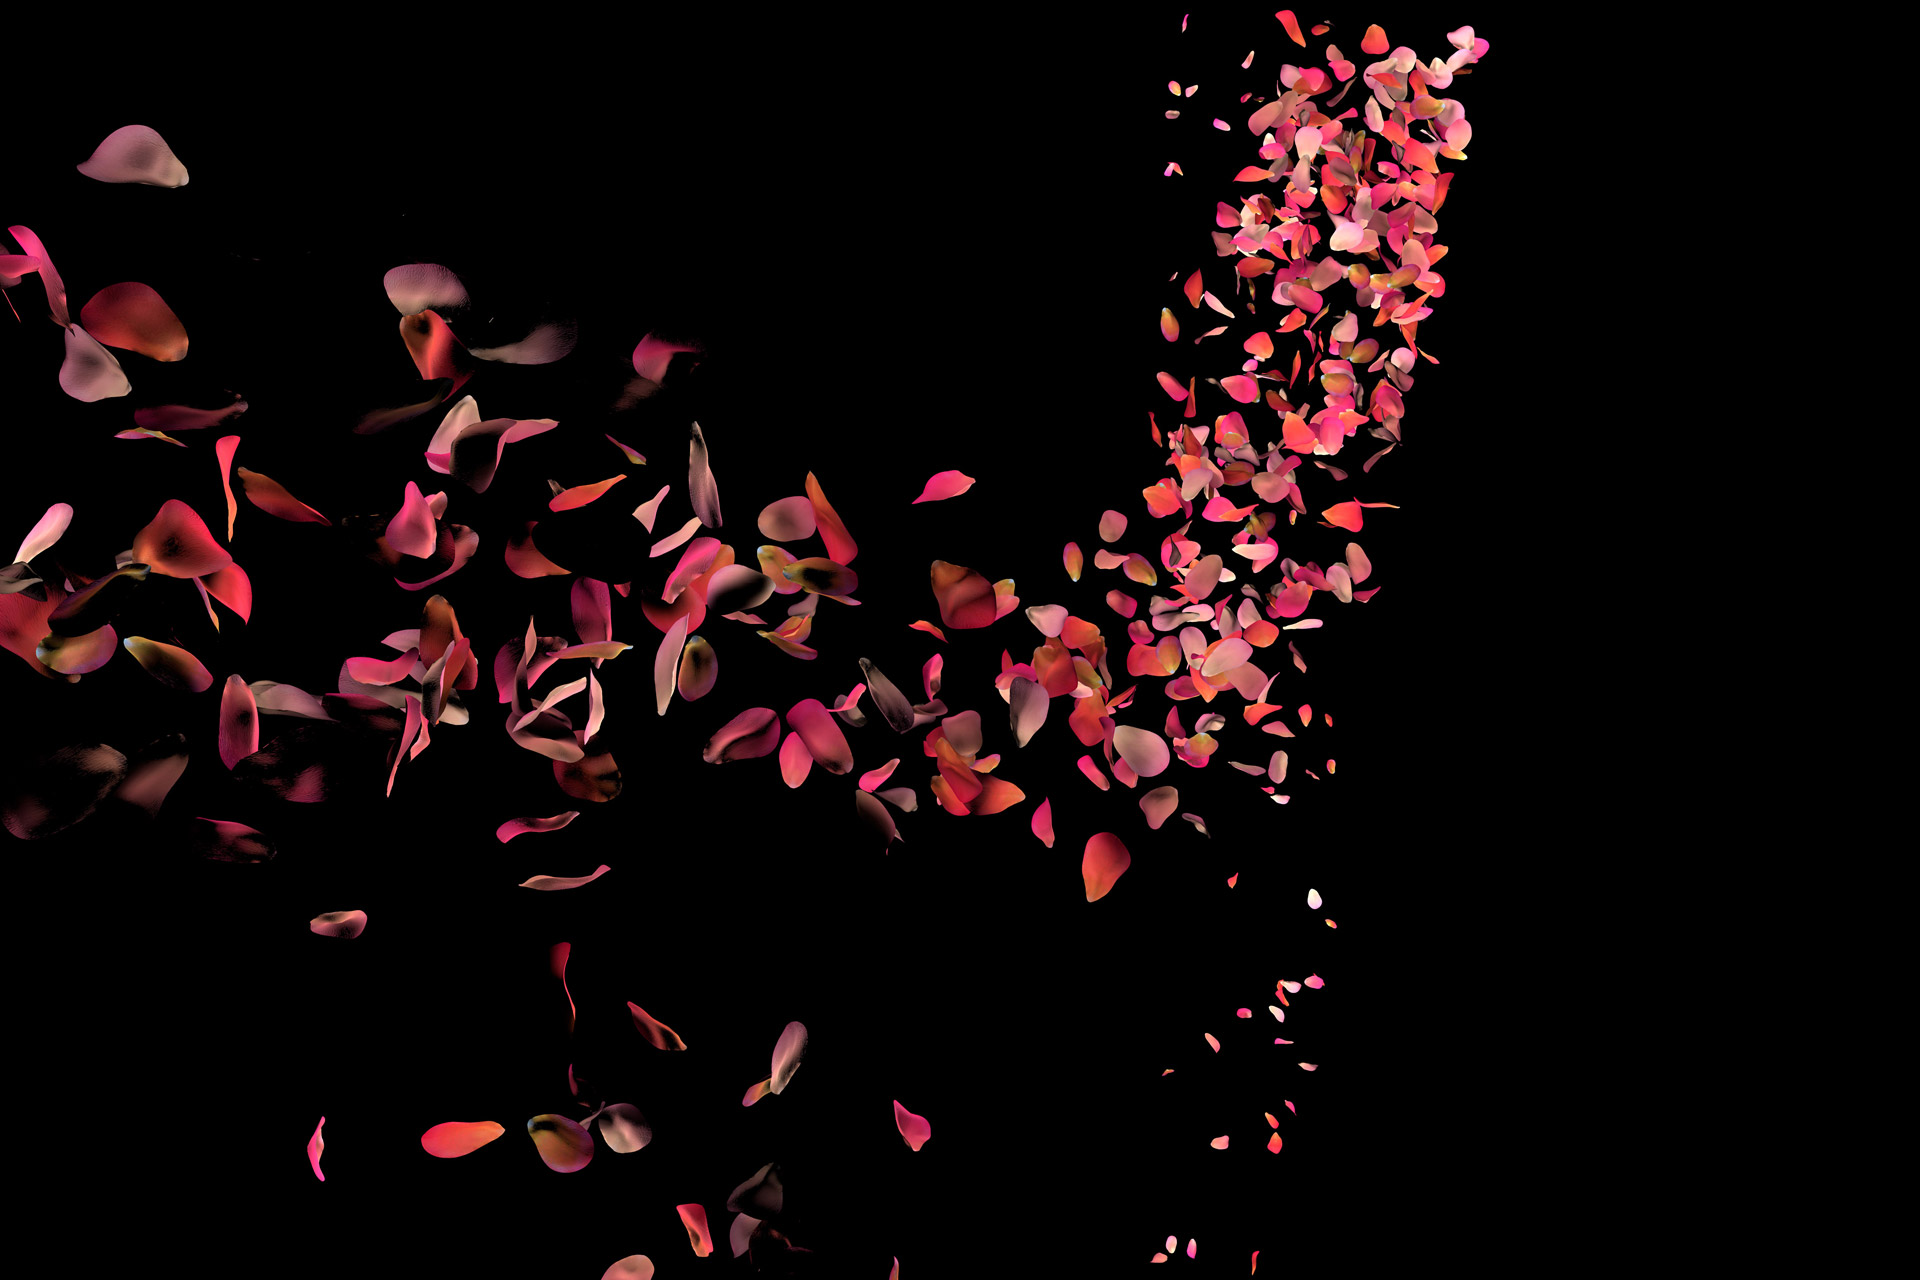 storm of rose petals